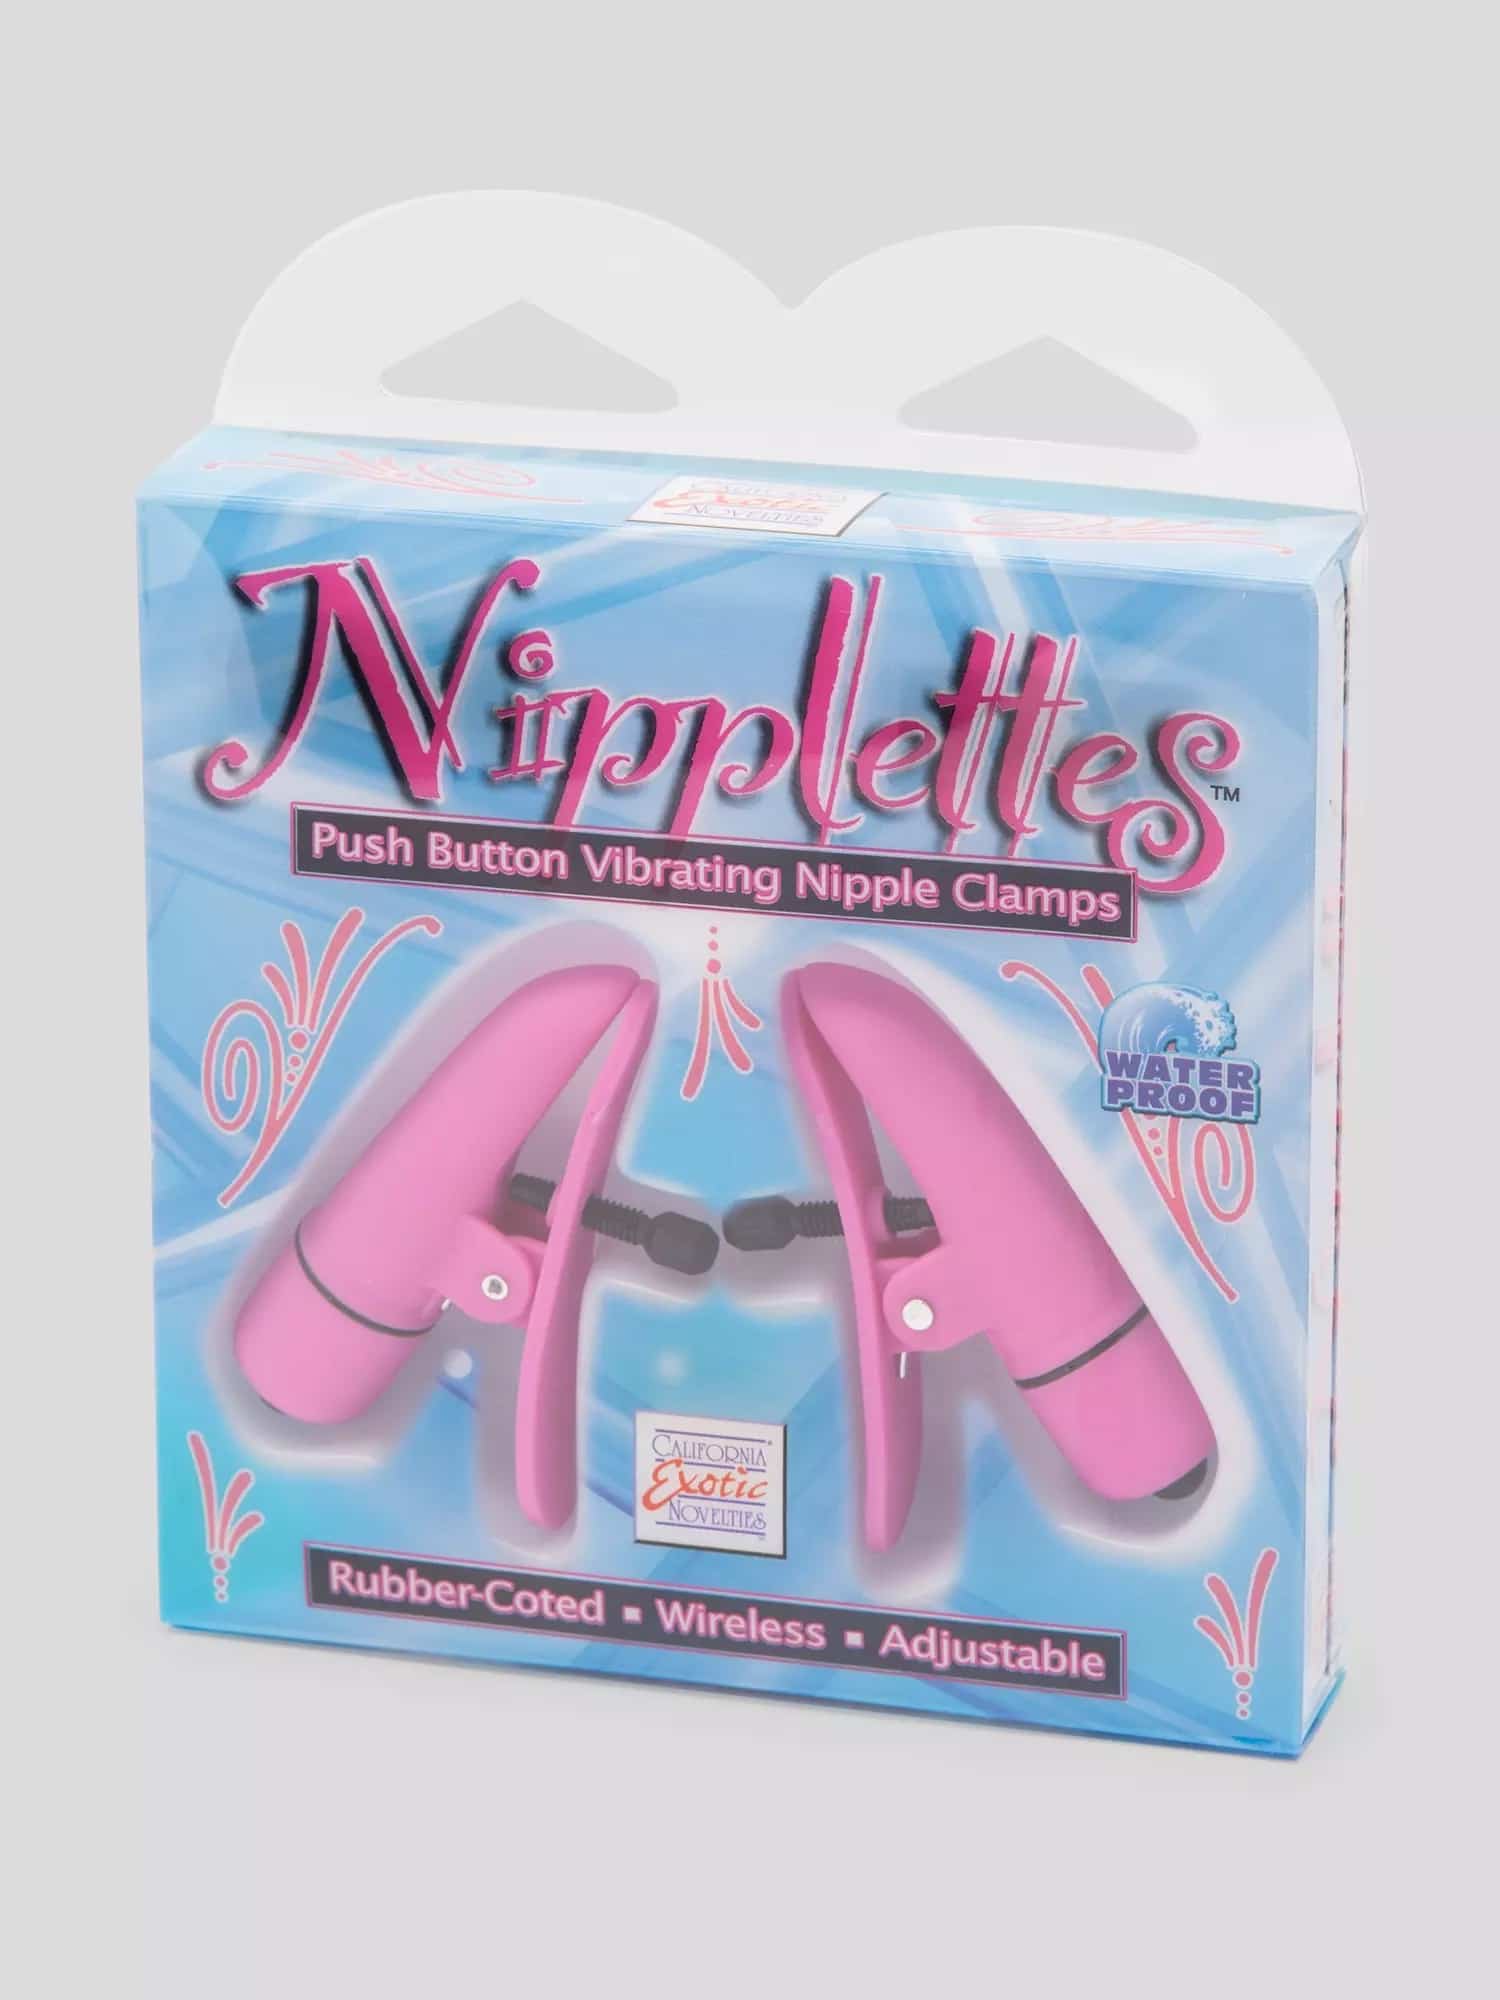 Nipple Play Nipplettes Vibrating Nipple Clamps. Slide 4